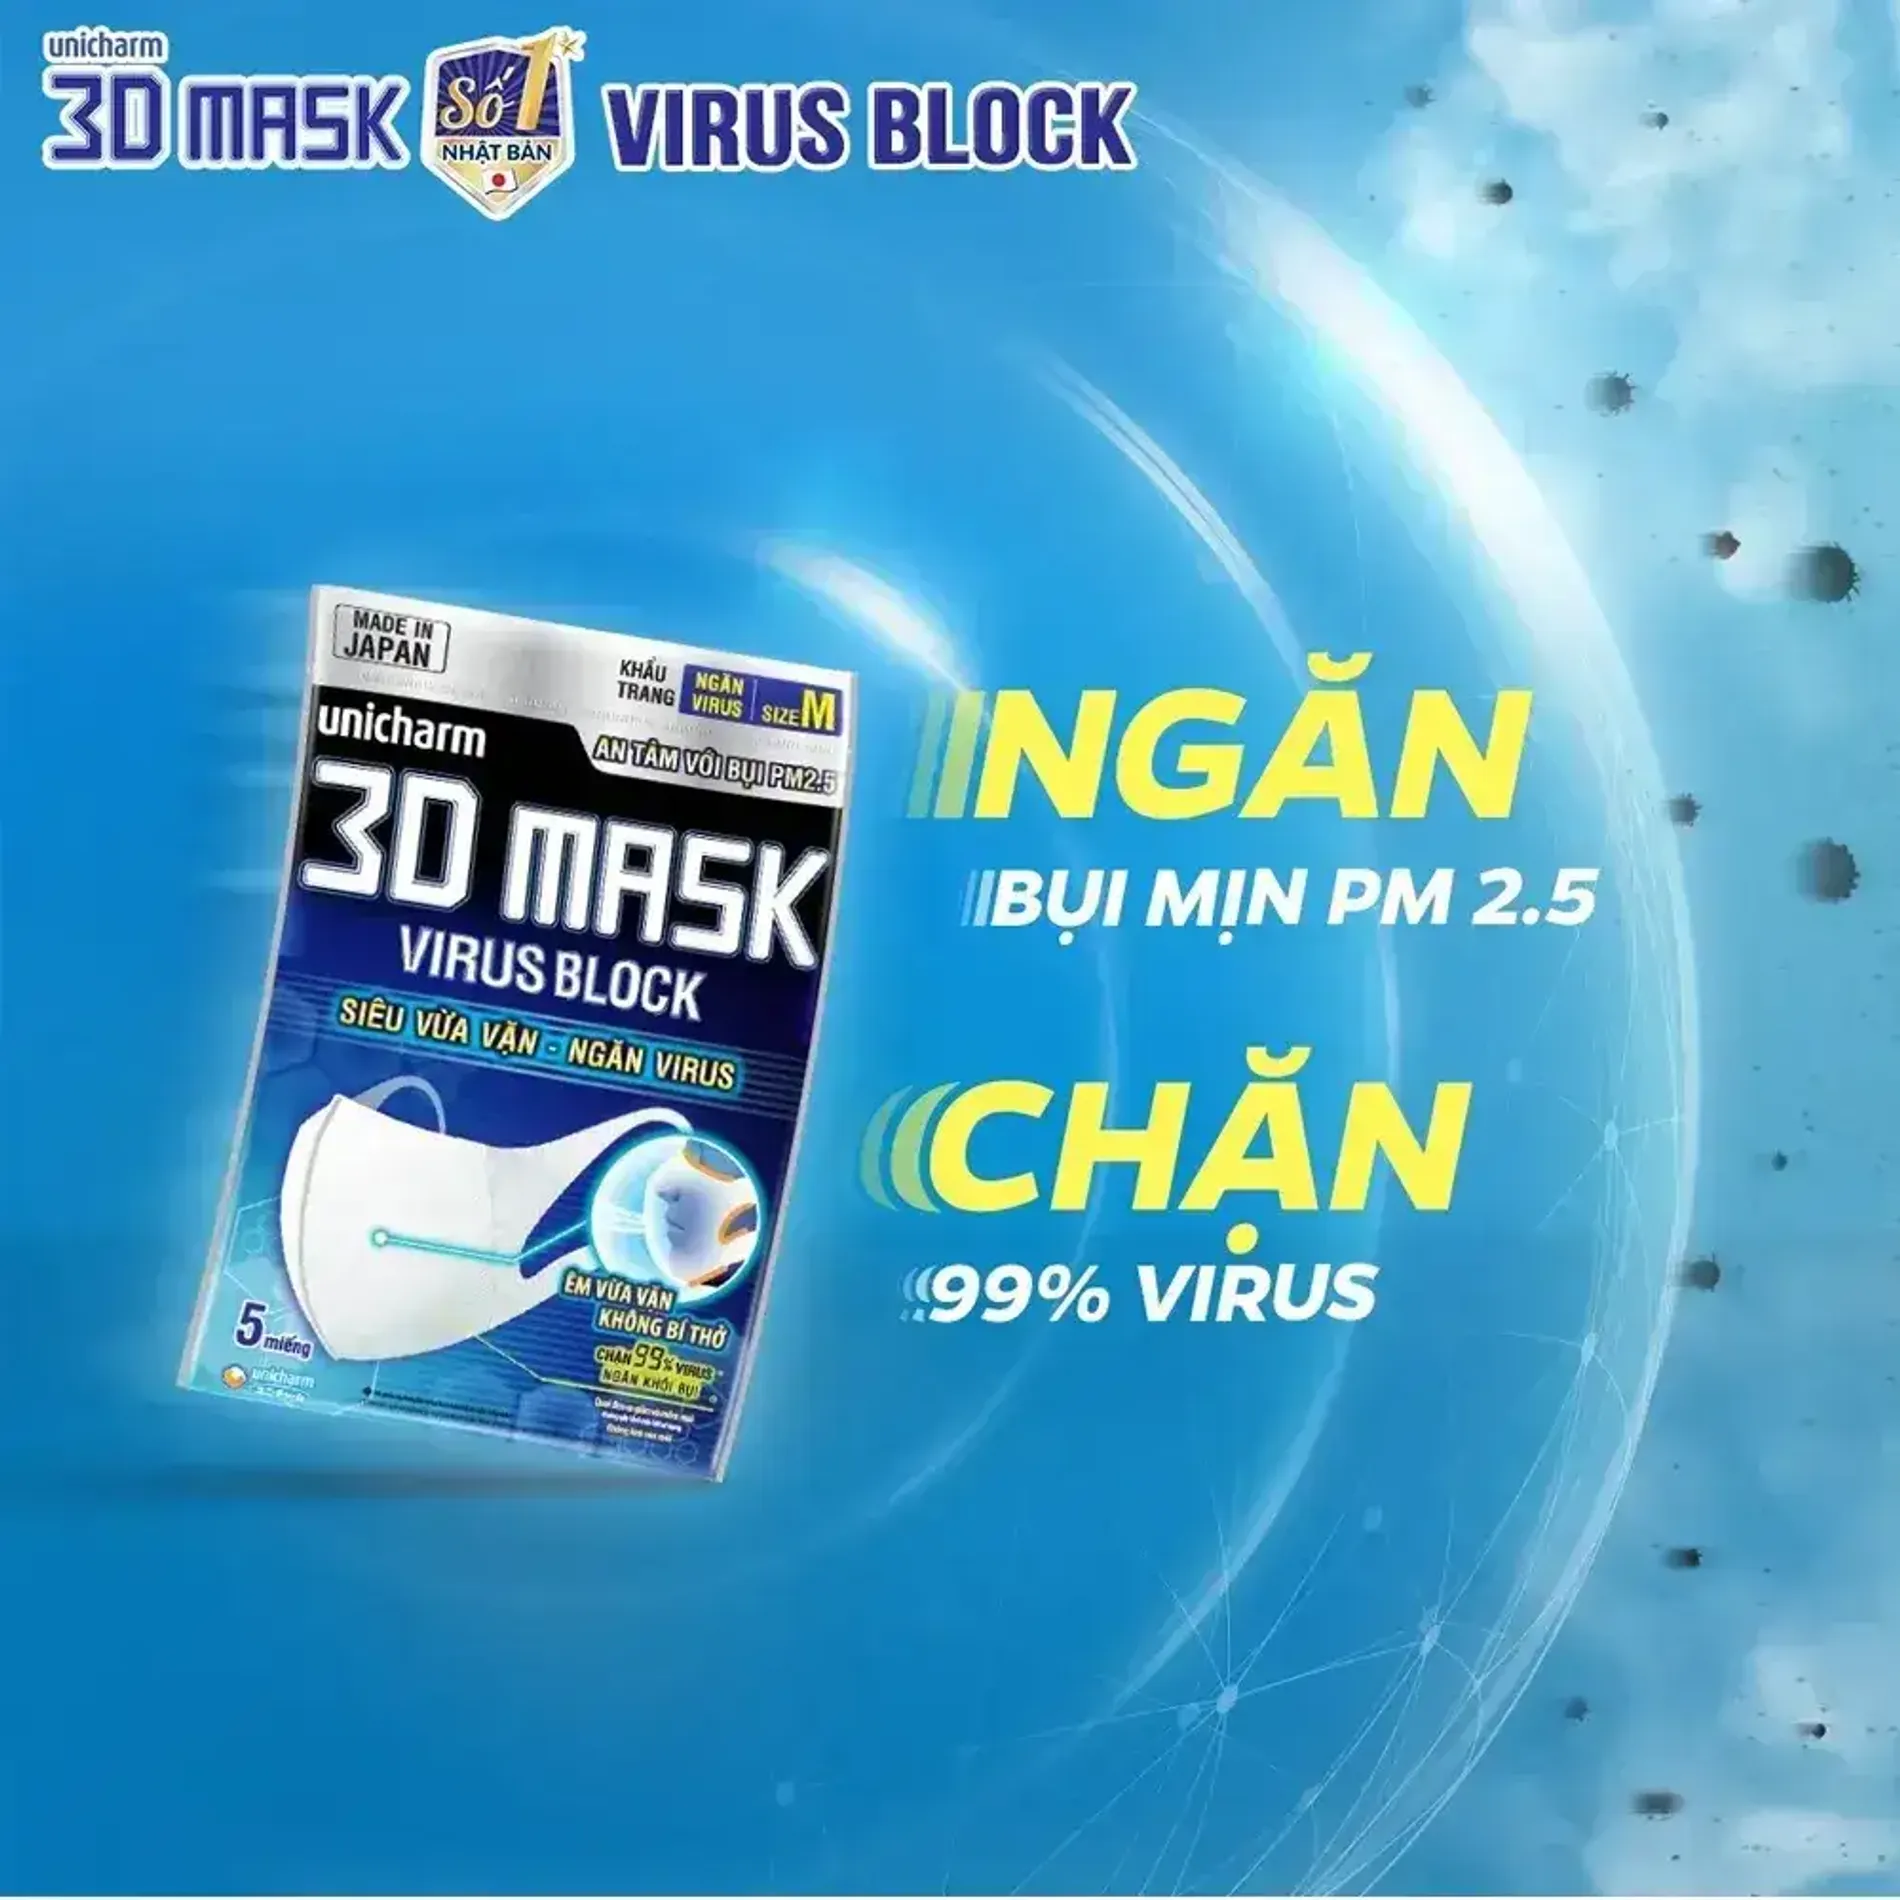 khau-trang-ngan-ngan-ngua-vi-khuan-unicharm-face-mask-3d-mask-virus-block-5-mieng-4